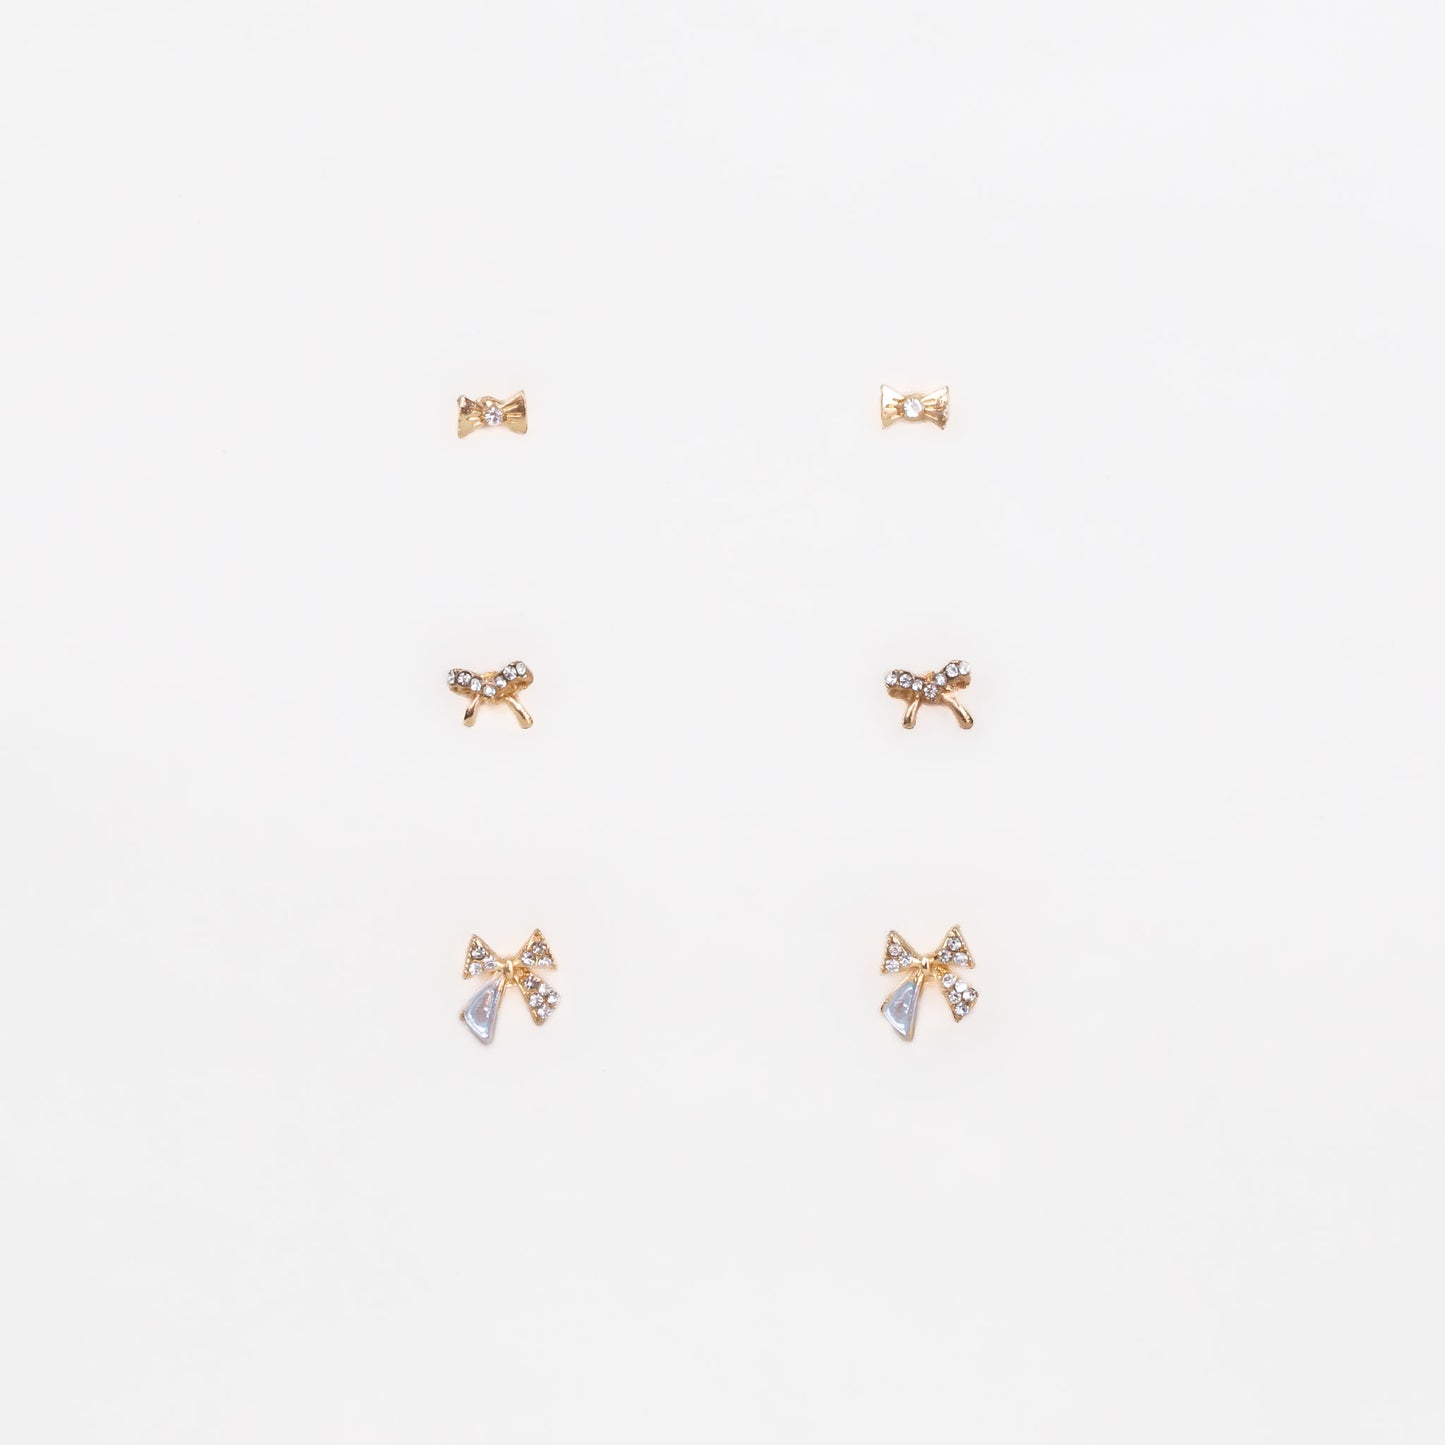 Cercei mici discreți cu fundițe și ștrasuri, set 3 perechi - Auriu